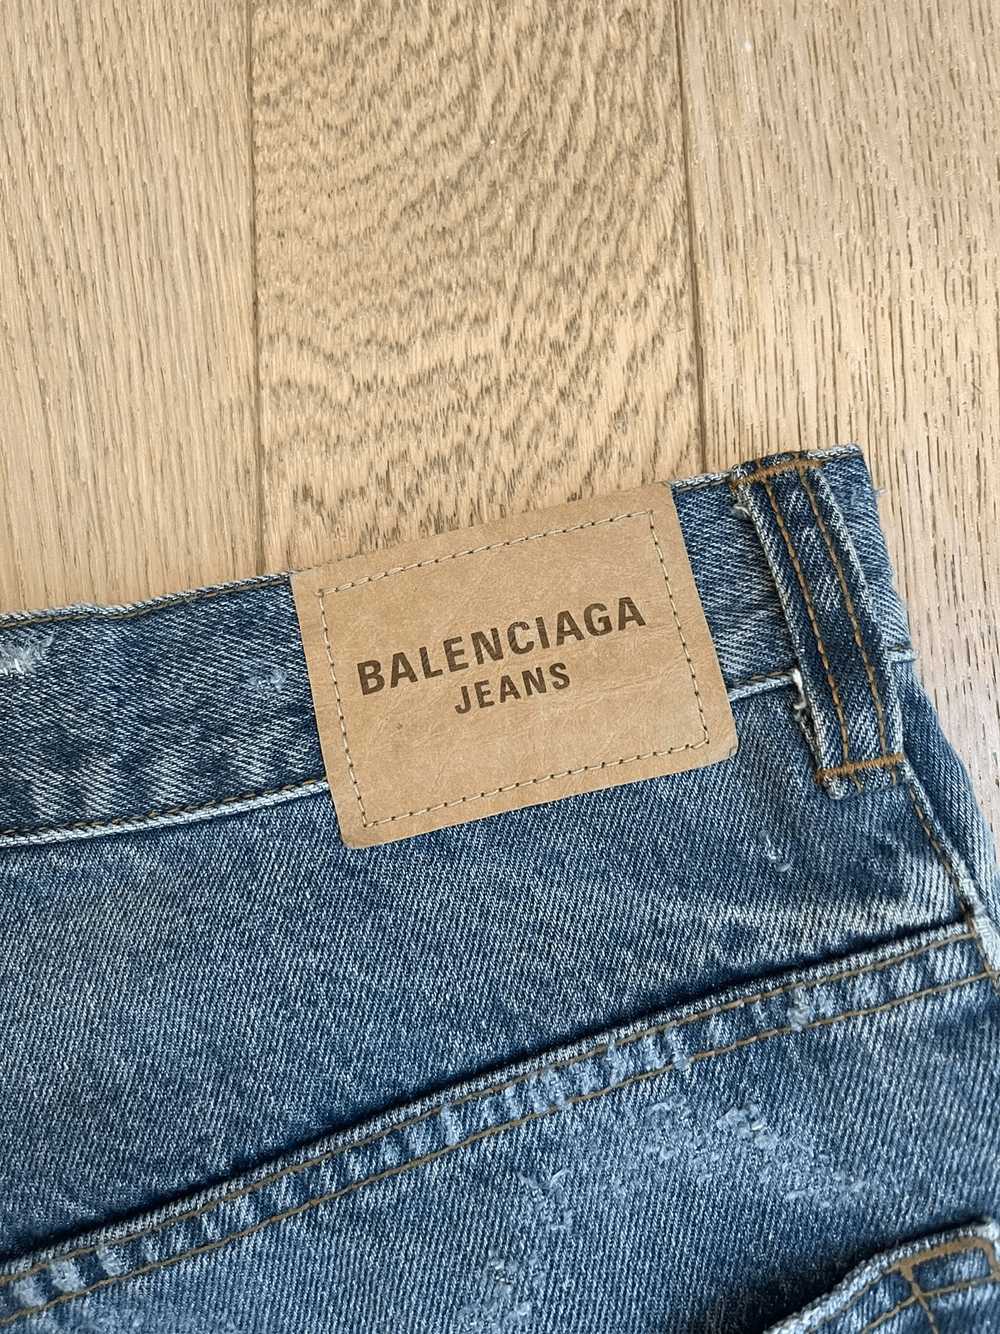 Balenciaga Balenciaga Destroyed Jeans RARE - image 9